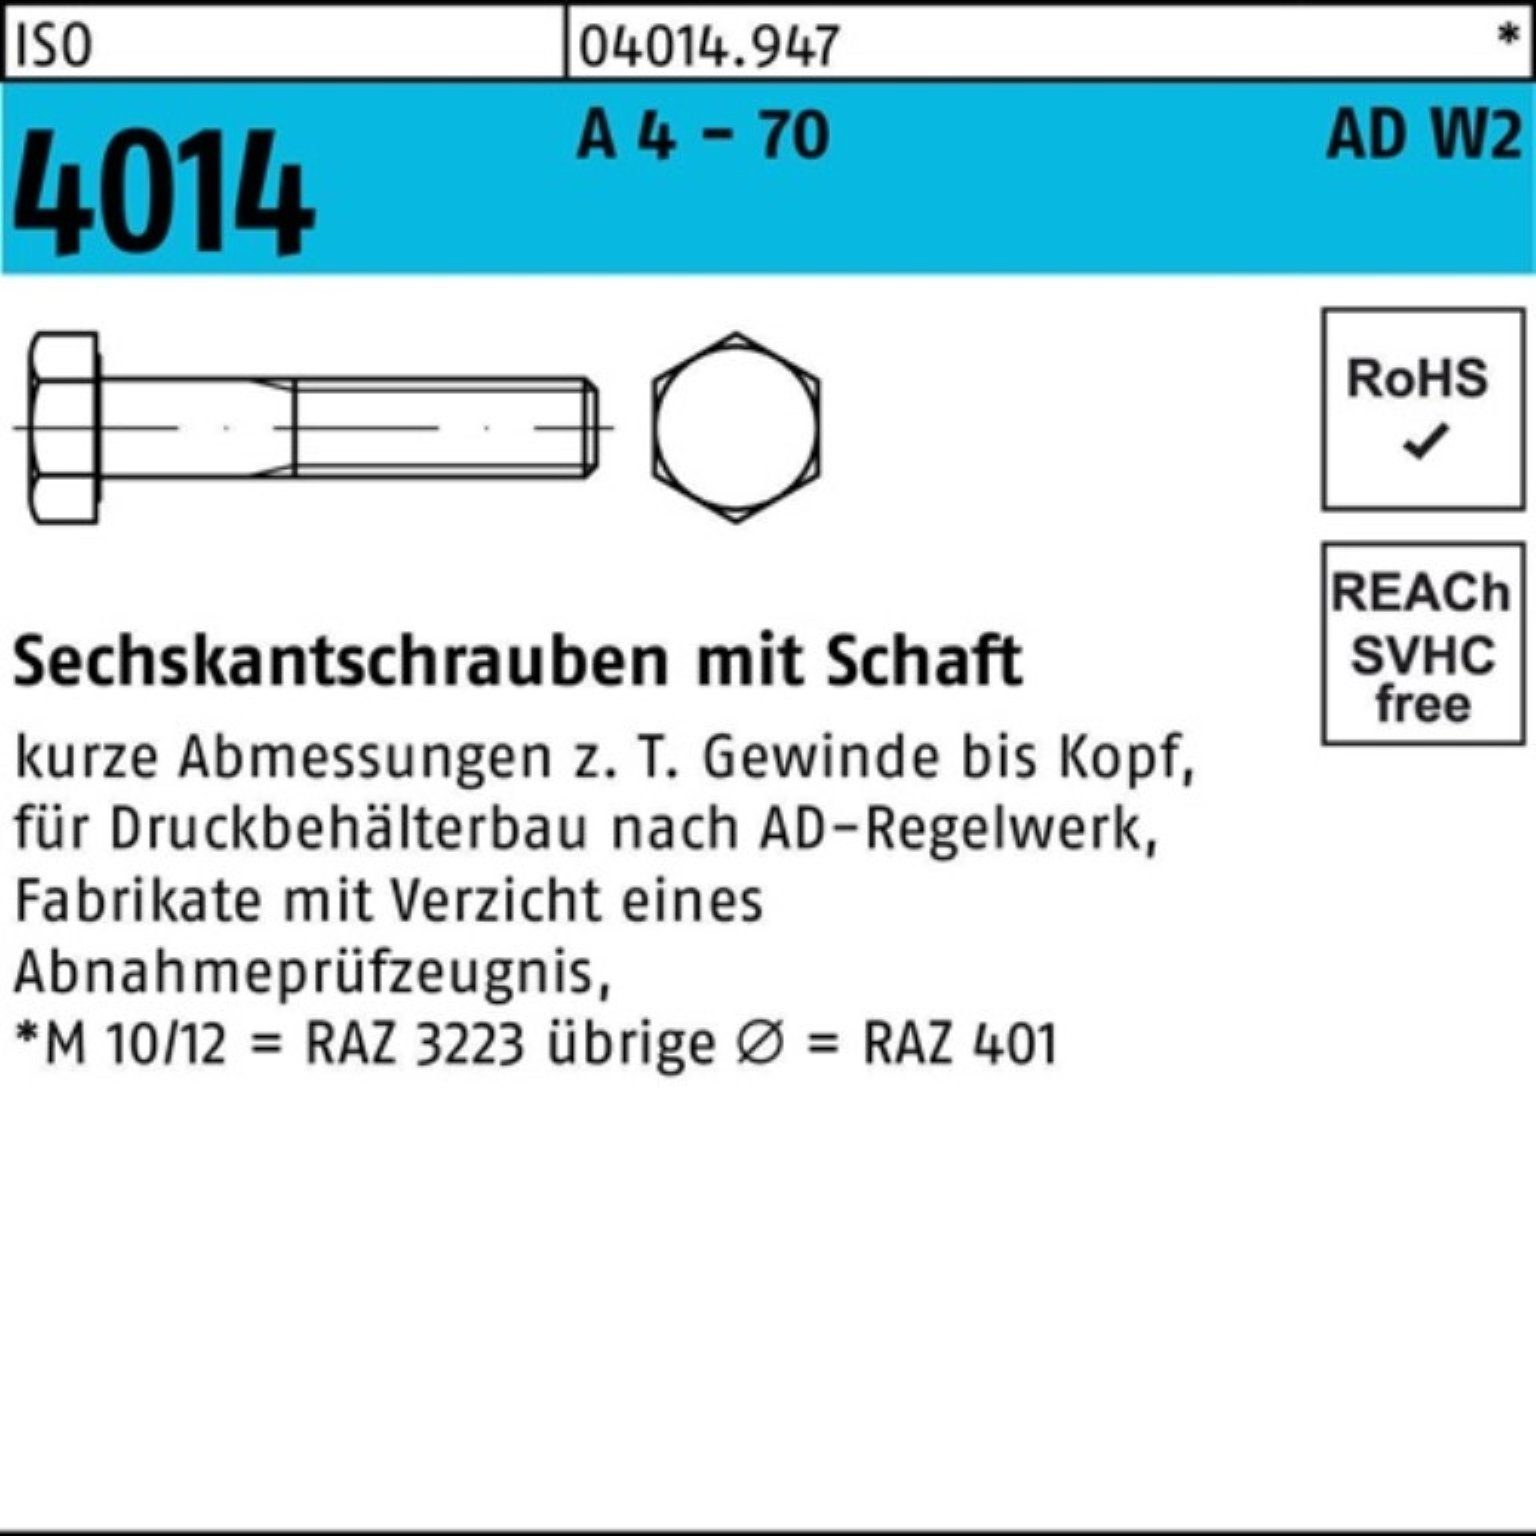 Bufab Sechskantschraube 100er Pack Sechskantschraube ISO 4014 Schaft M12x 90 A 4 - 70 AD-W2 25